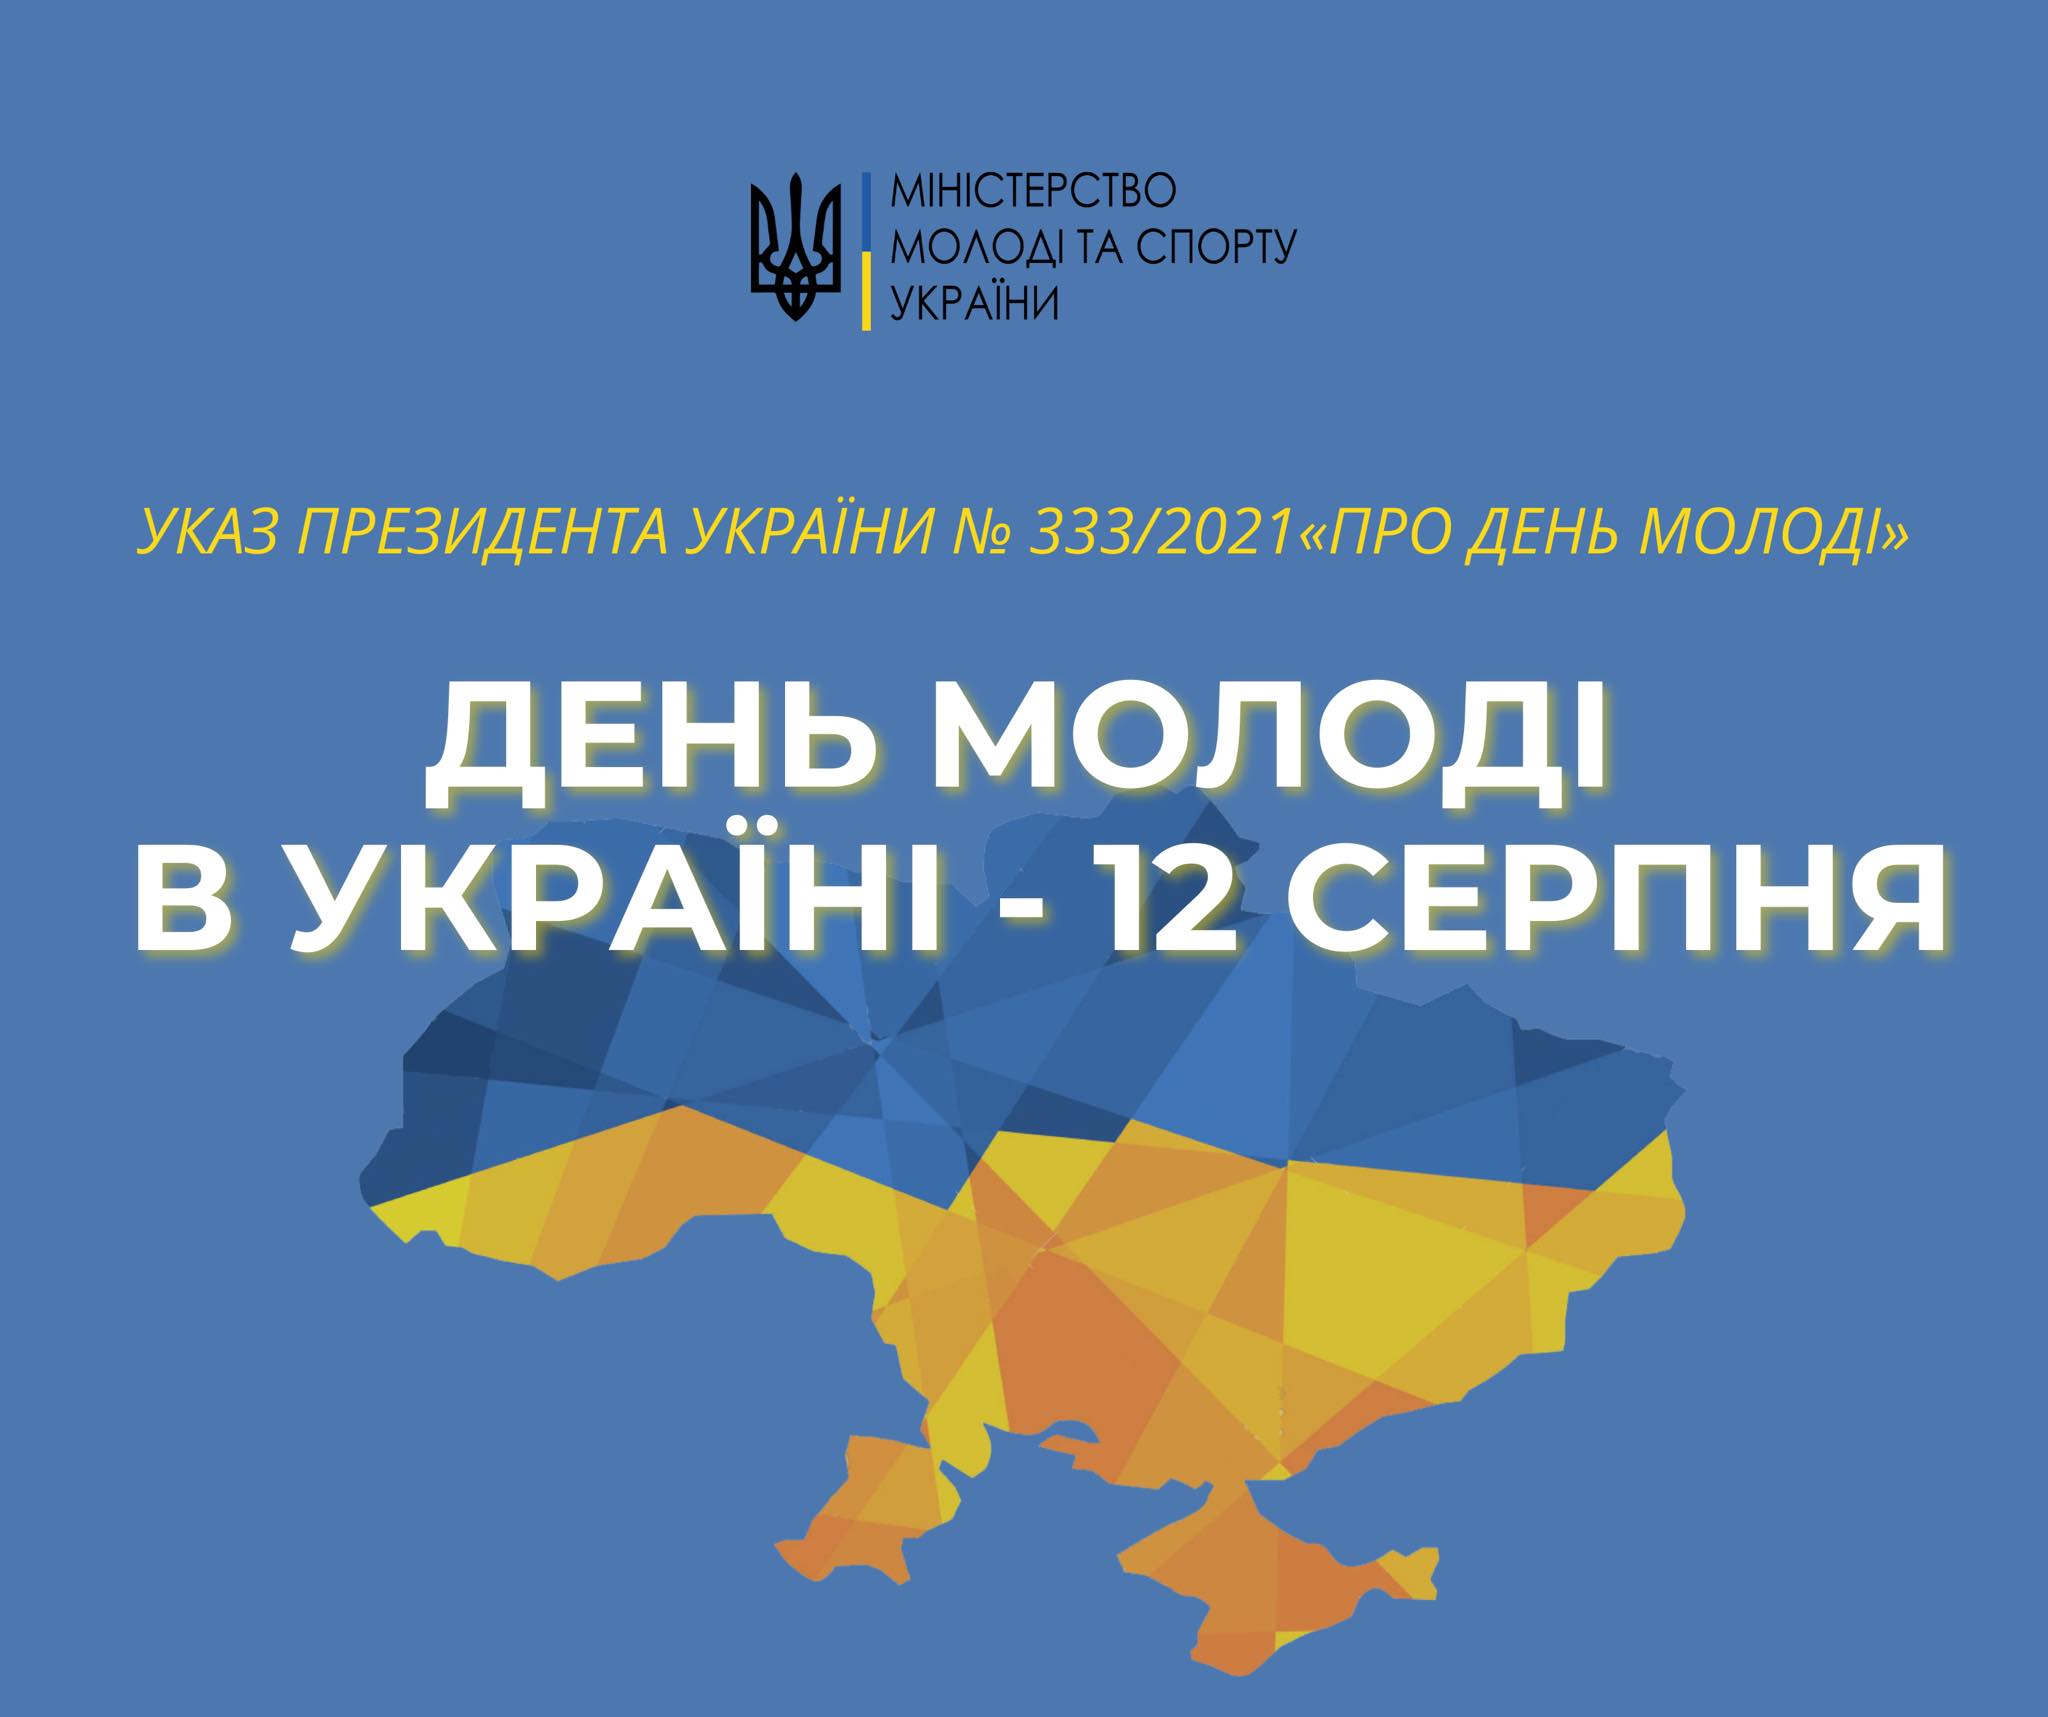 Цьогоріч вперше відзначатимемо День молоді в Україні разом з усім світом – 12 серпня